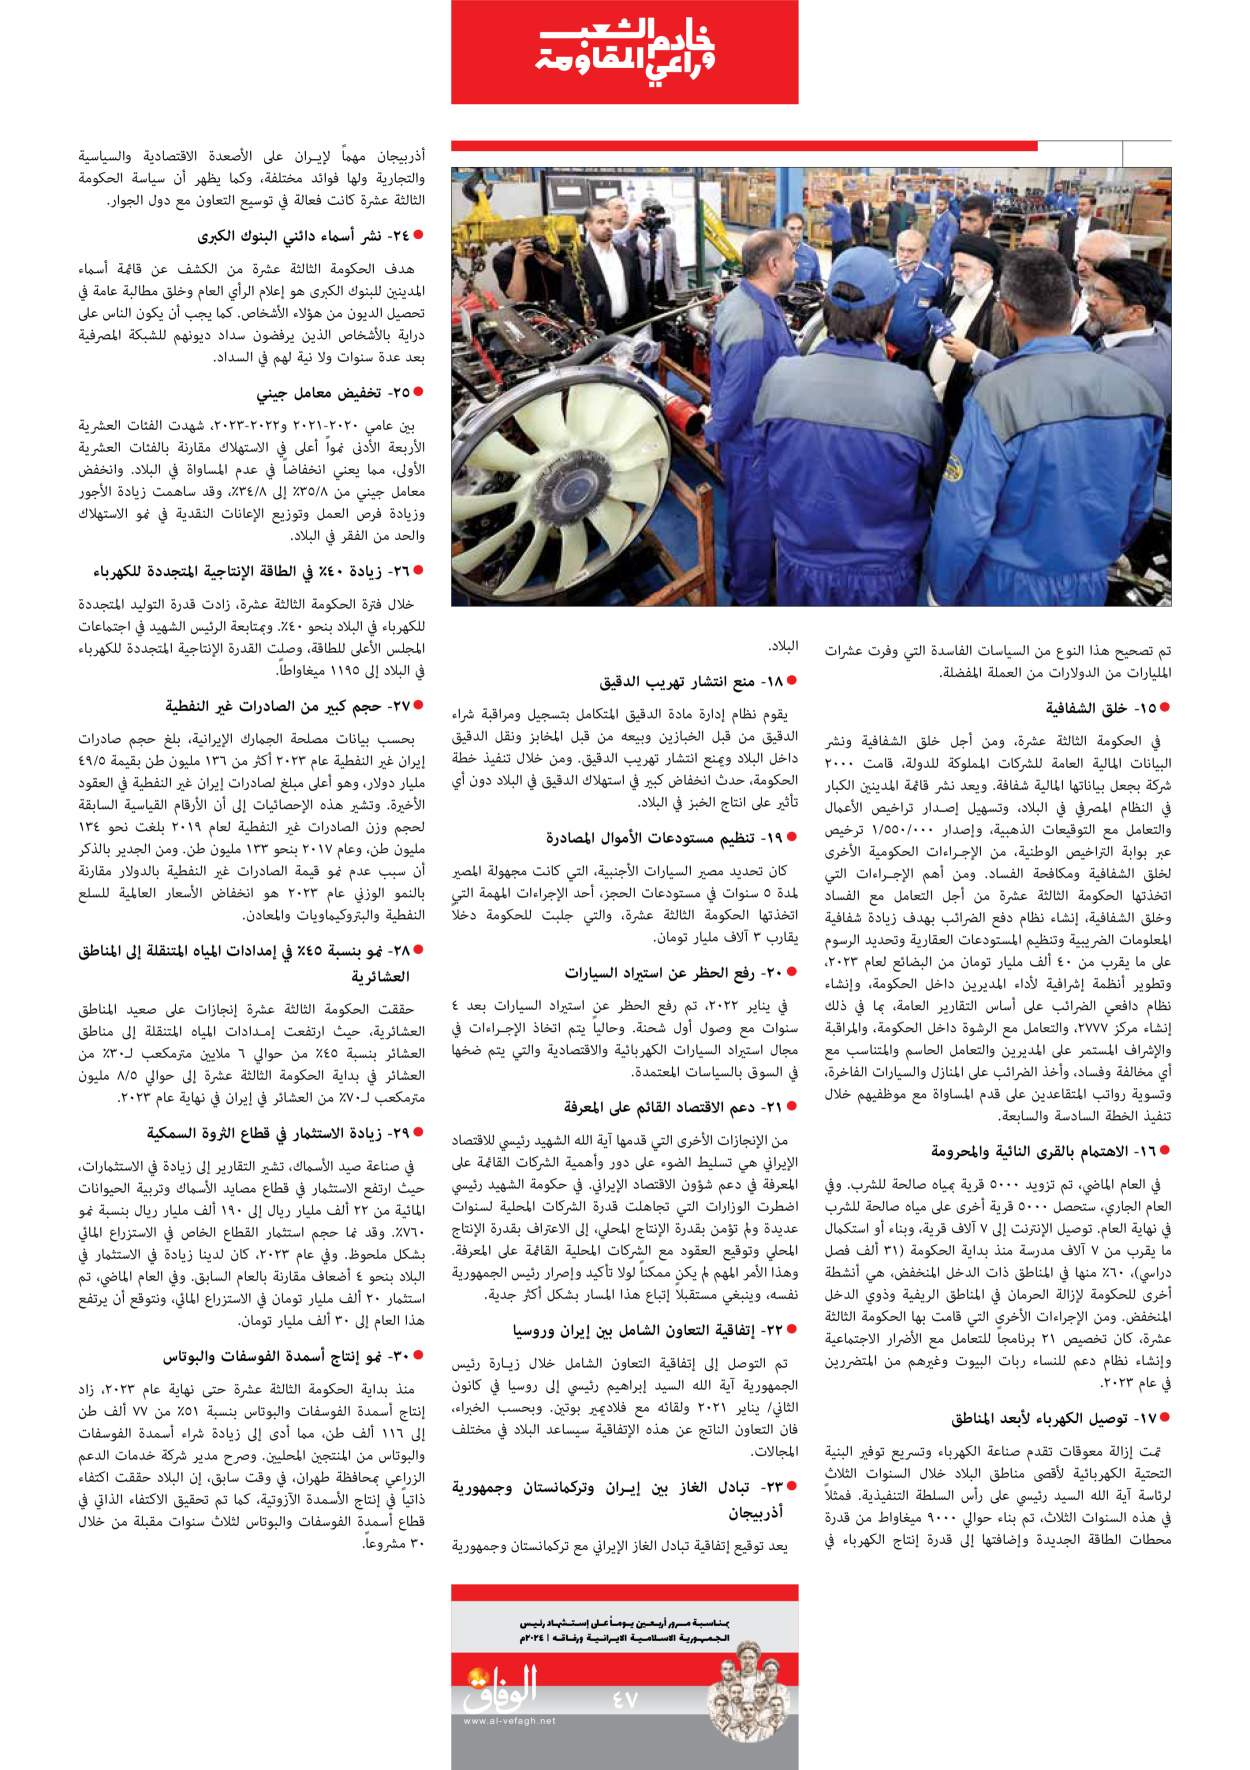 صحیفة ایران الدولیة الوفاق - ملحق ویژه نامه چهلم شهید رییسی - ٢٩ يونيو ٢٠٢٤ - الصفحة ٤۷